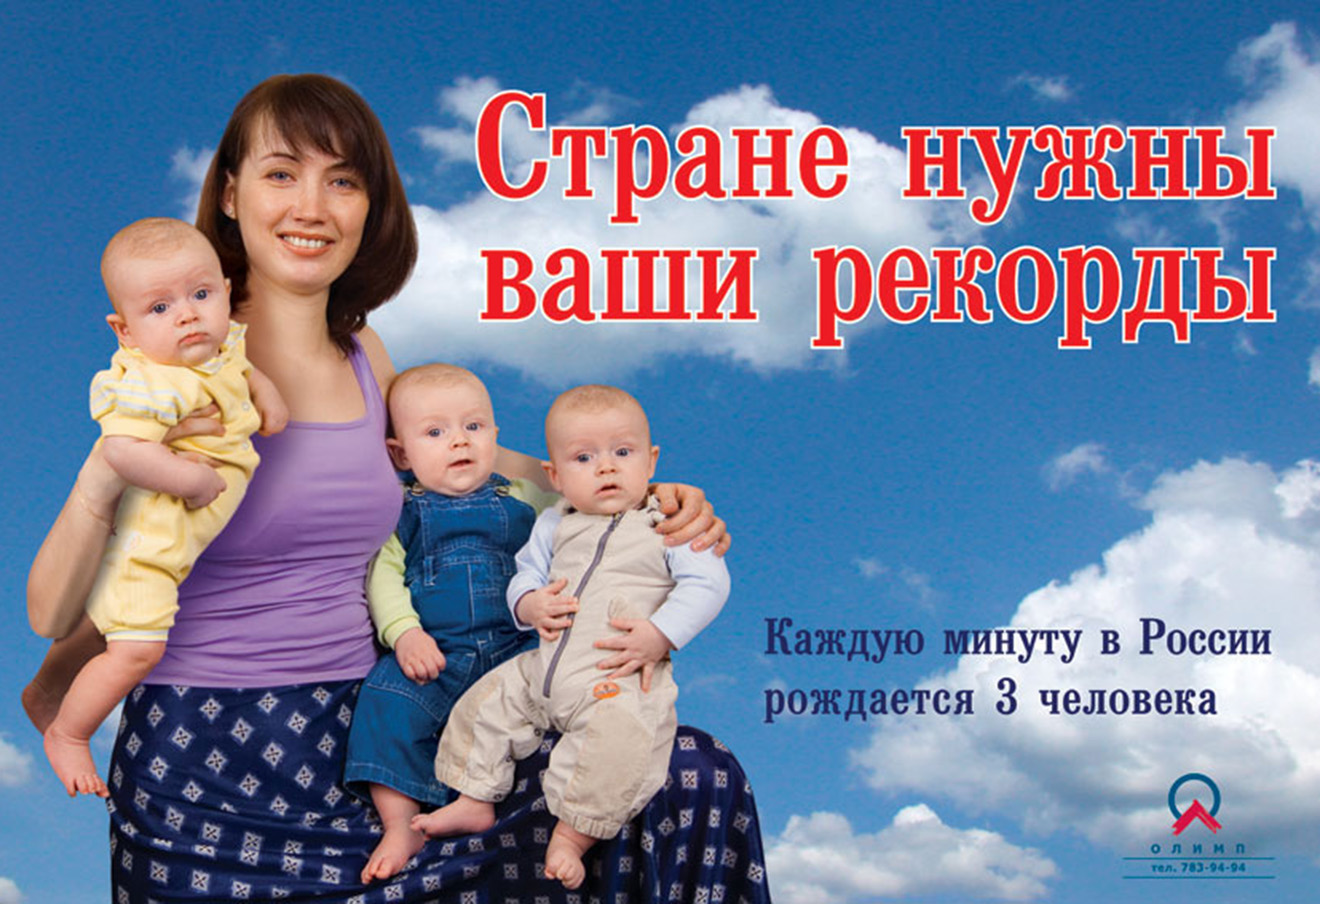 Социальная реклама. Стране нужны ваши рекорды. Стране нужны ваши рекорды плакат. Социальная реклама в России.